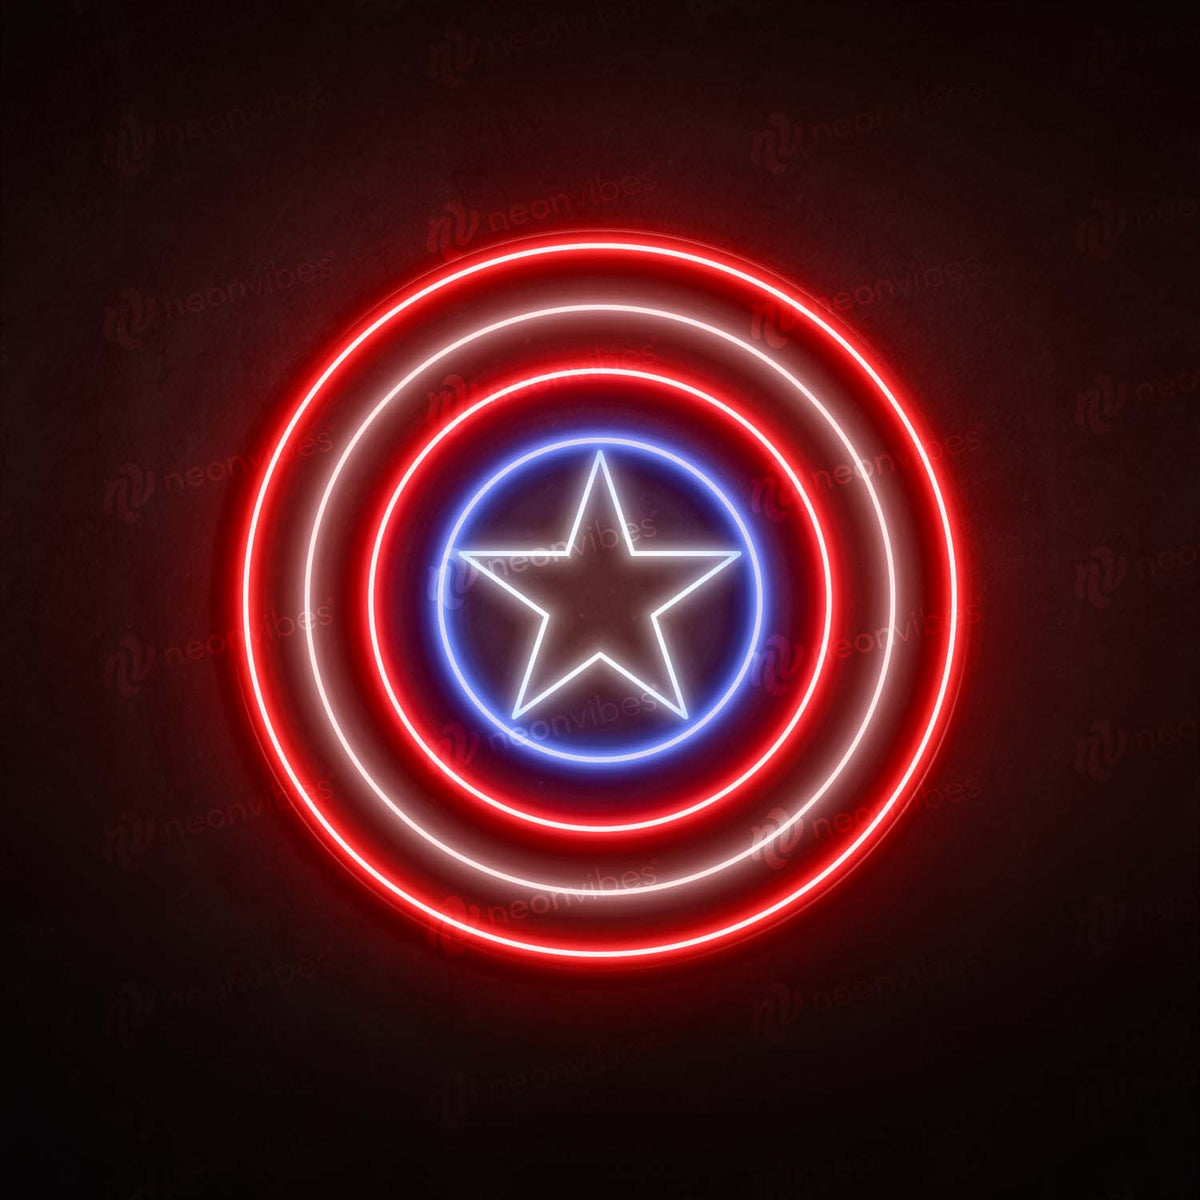 Captain America neon sign